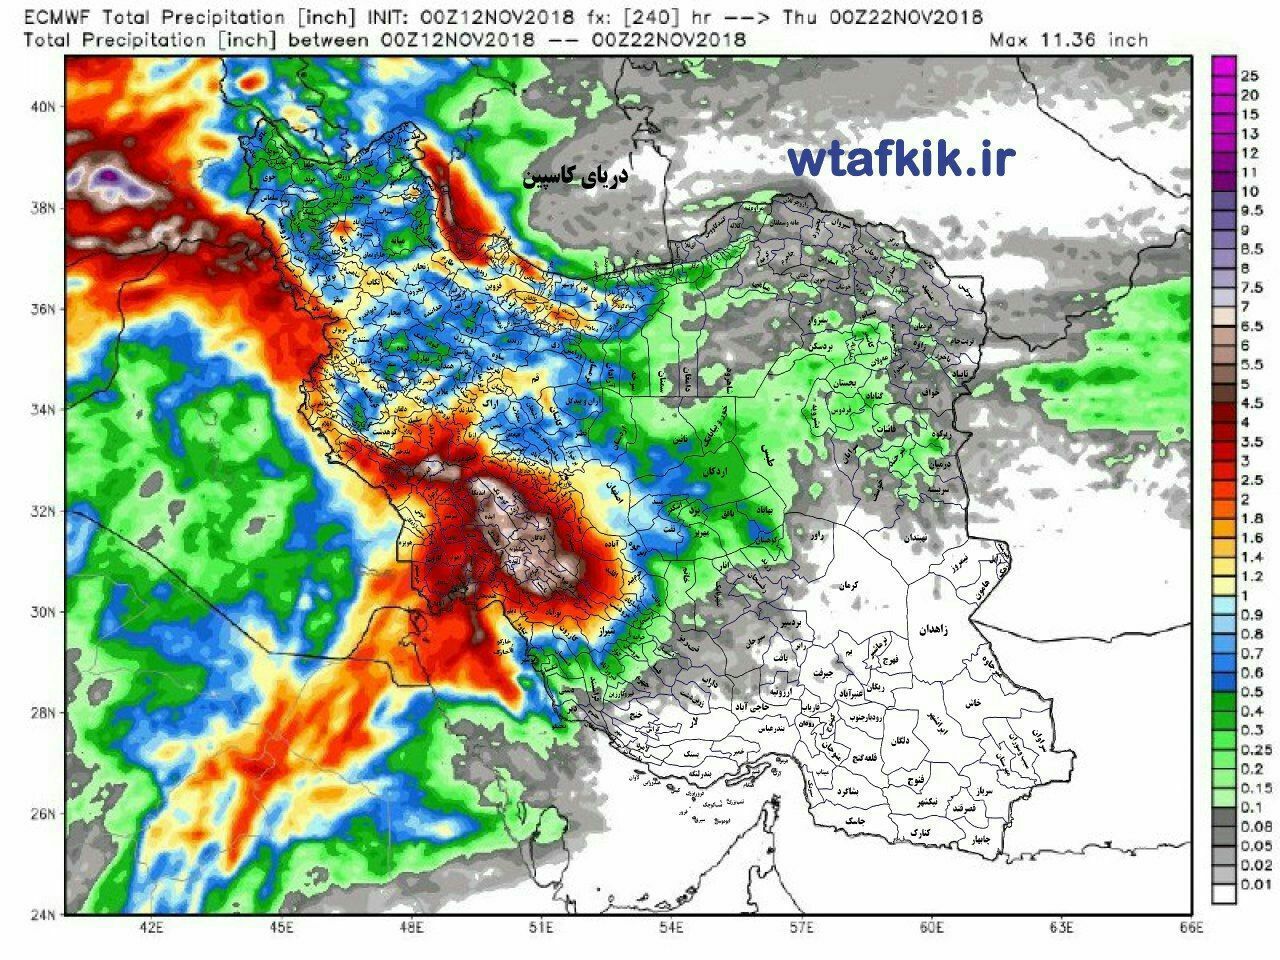 جزئیاتی از سیستم بارشی جدید در کهگیلویه و بویراحمد / فرصت یک روزه برای کشاورزان / چهارشهرستان منتظر بارش های سیل آسا باشند + تصاویر